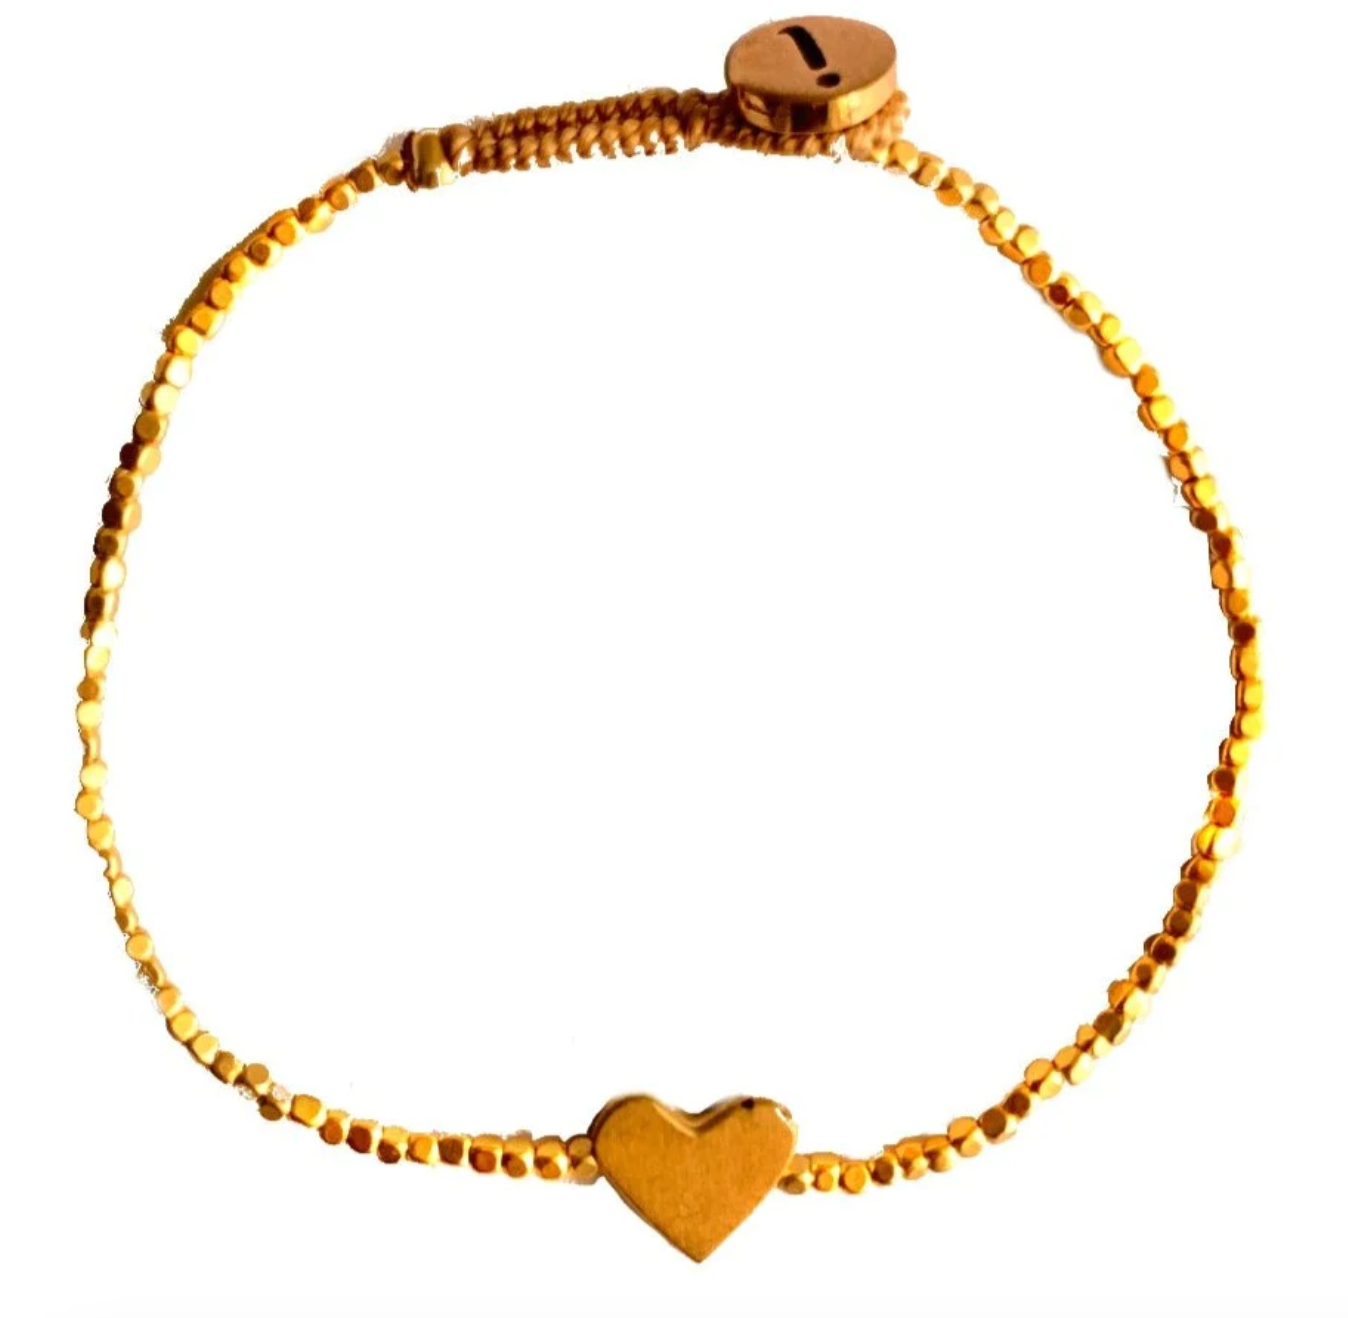 Peggy Heart Bracelet - Gold